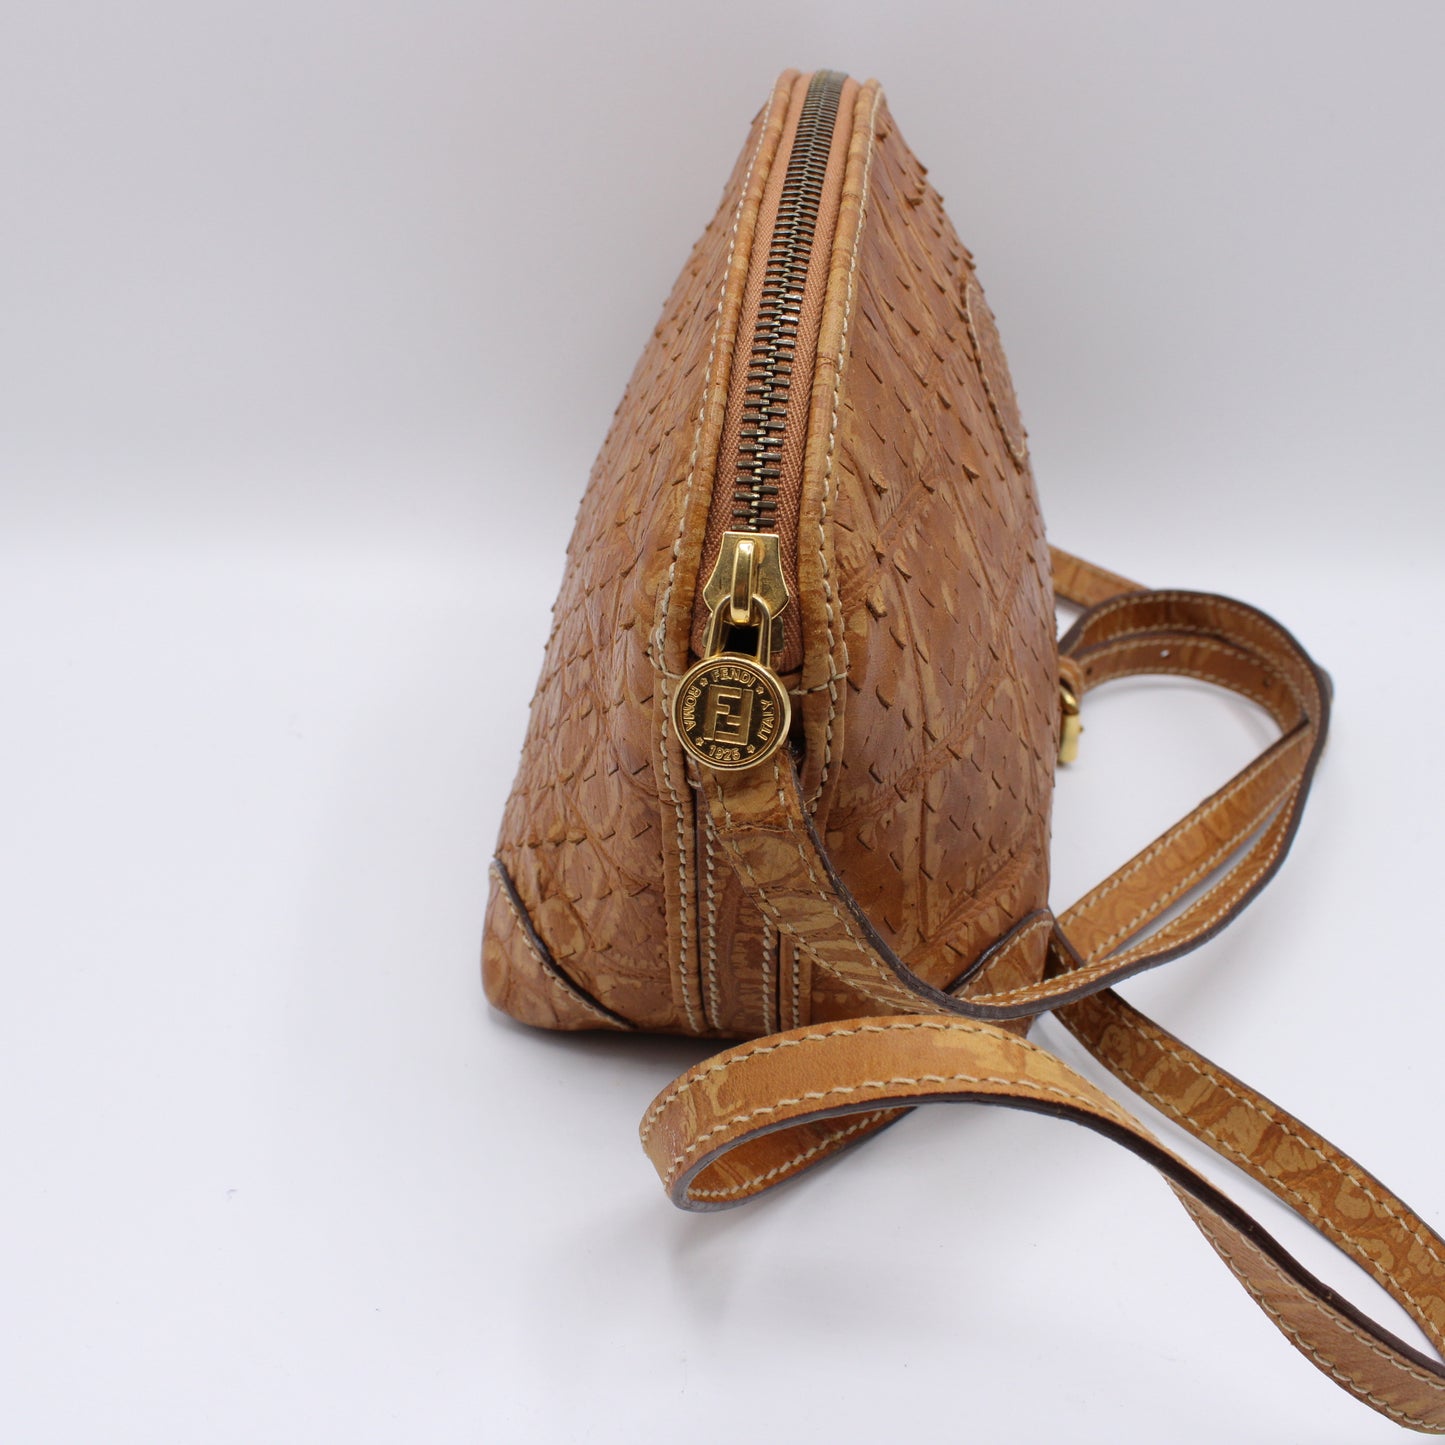 Fendi Perforated Leather Crossbody Vibrant Orange Hue Bag Vintage